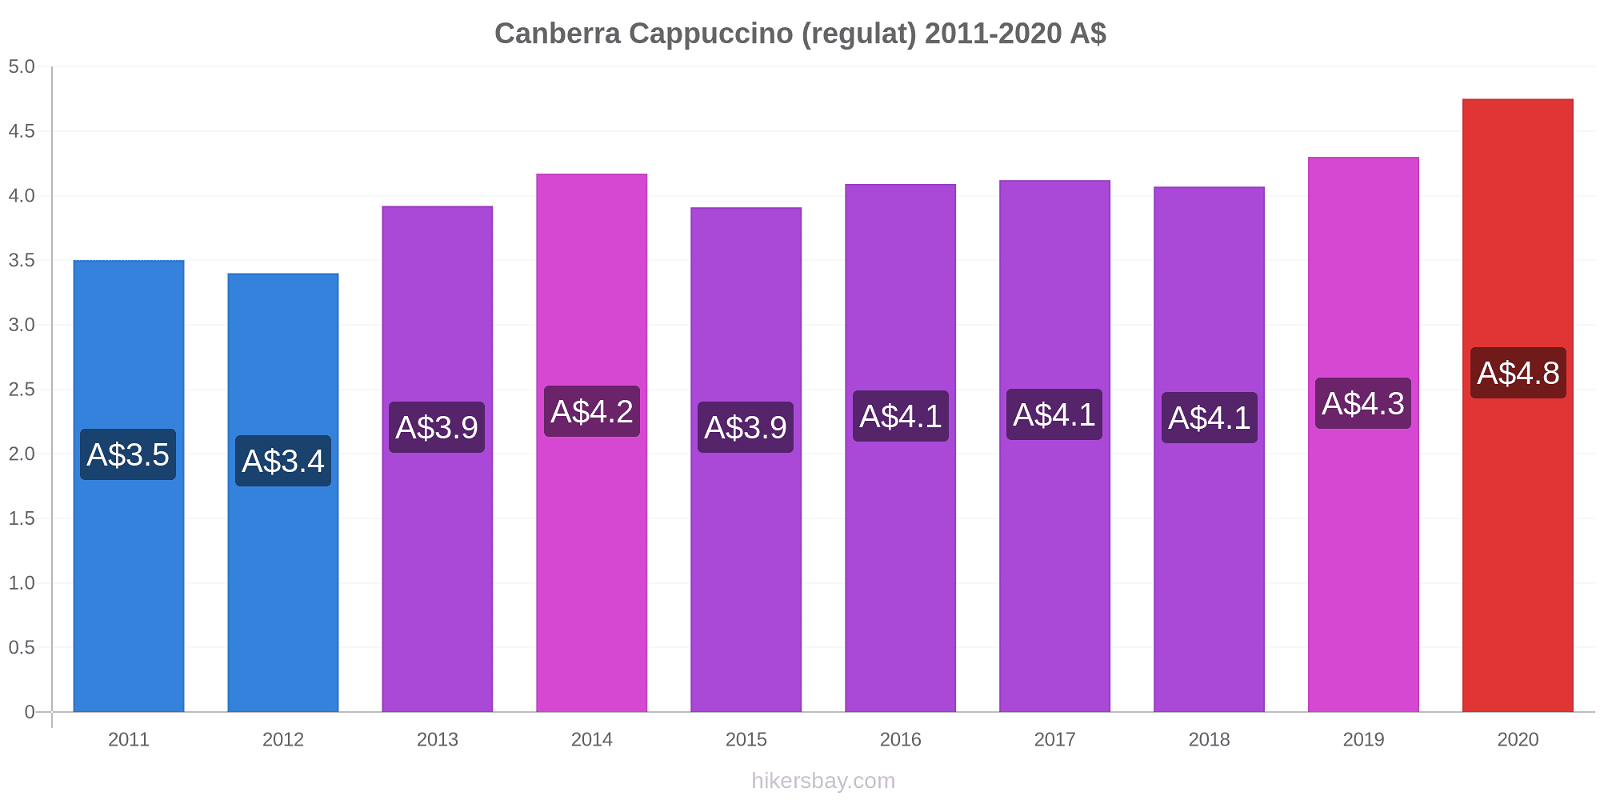 Canberra modificări de preț Cappuccino (regulat) hikersbay.com